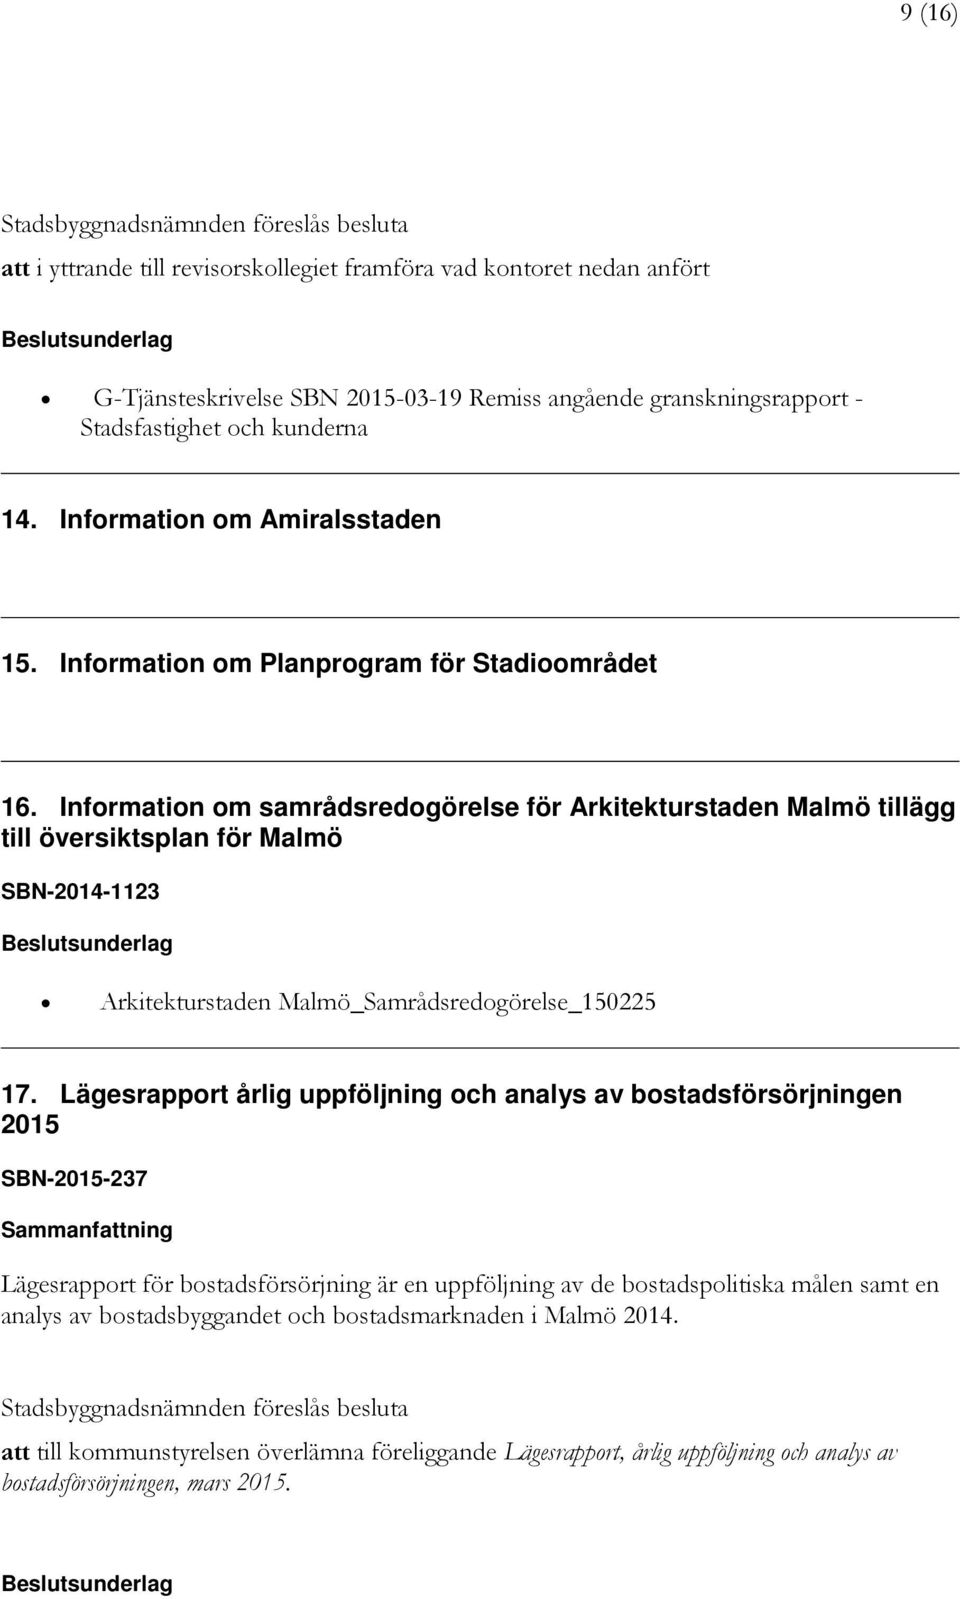 Information om samrådsredogörelse för Arkitekturstaden Malmö tillägg till översiktsplan för Malmö SBN-2014-1123 Arkitekturstaden Malmö_Samrådsredogörelse_150225 17.